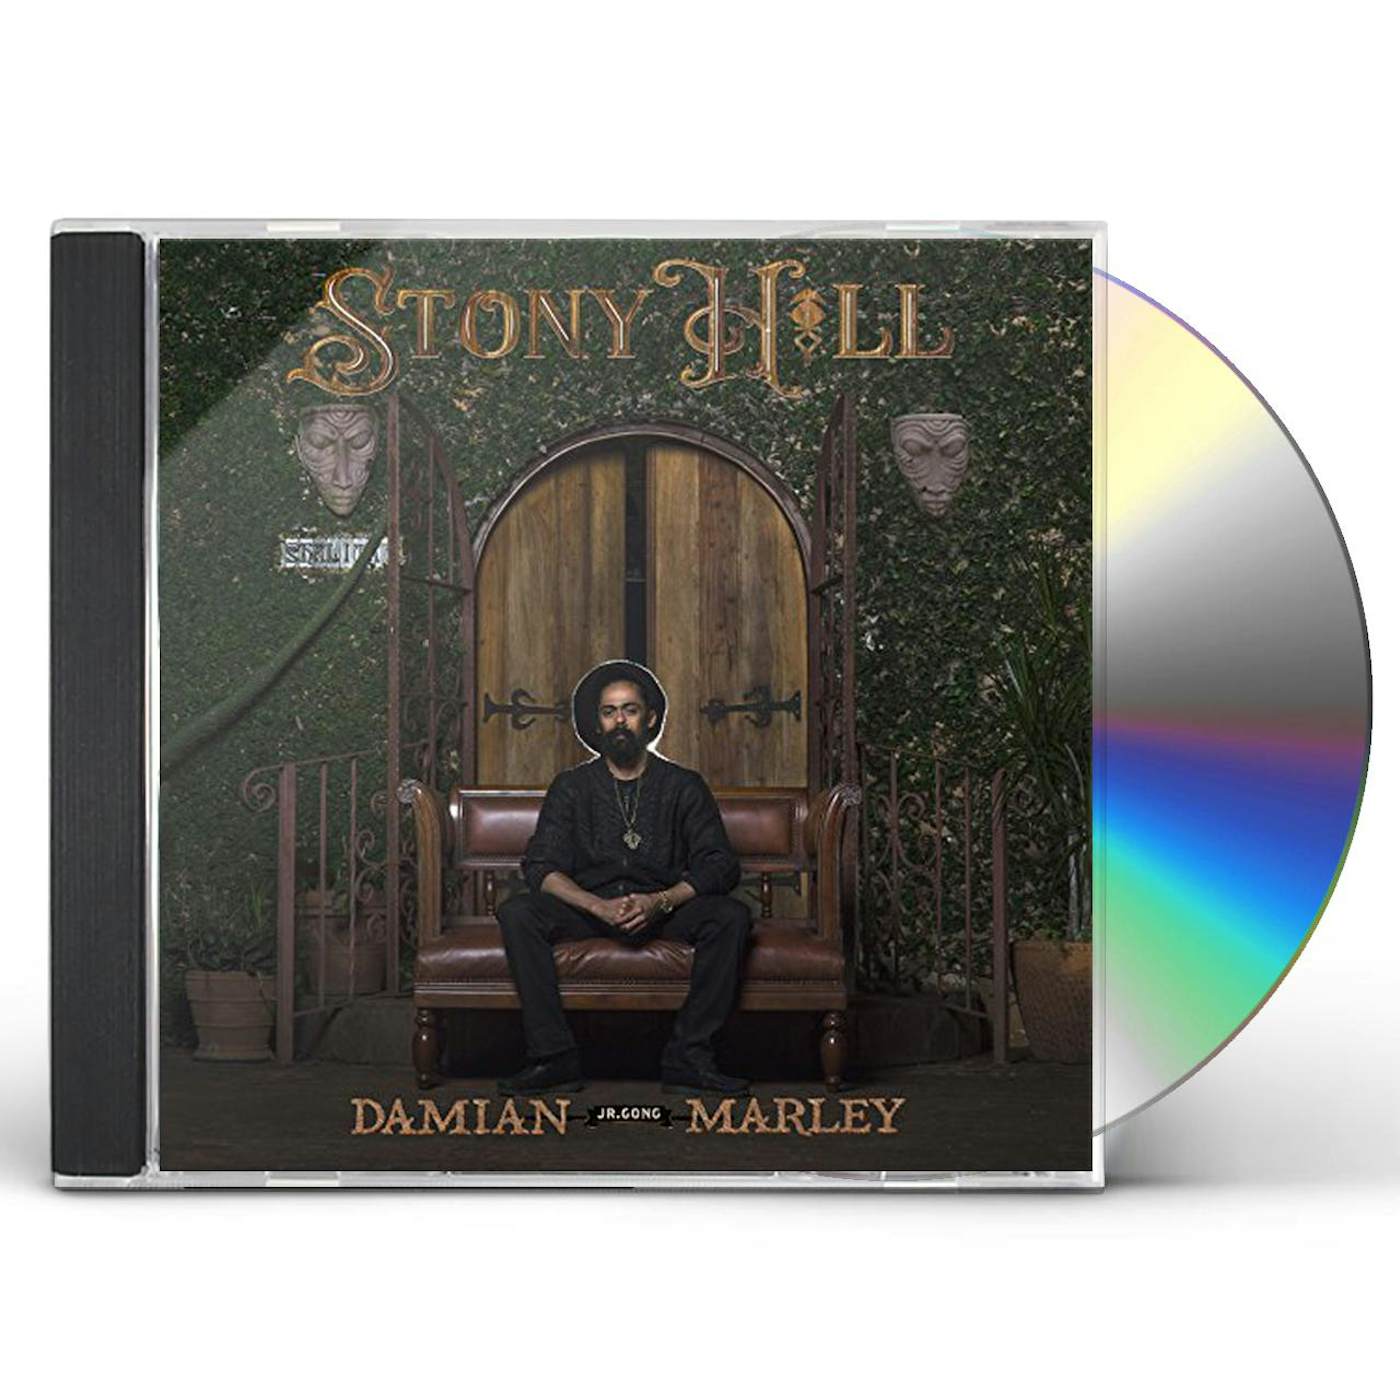 Damian Marley - Speak Life [Lyrics] [Stony Hill Album 2017] 